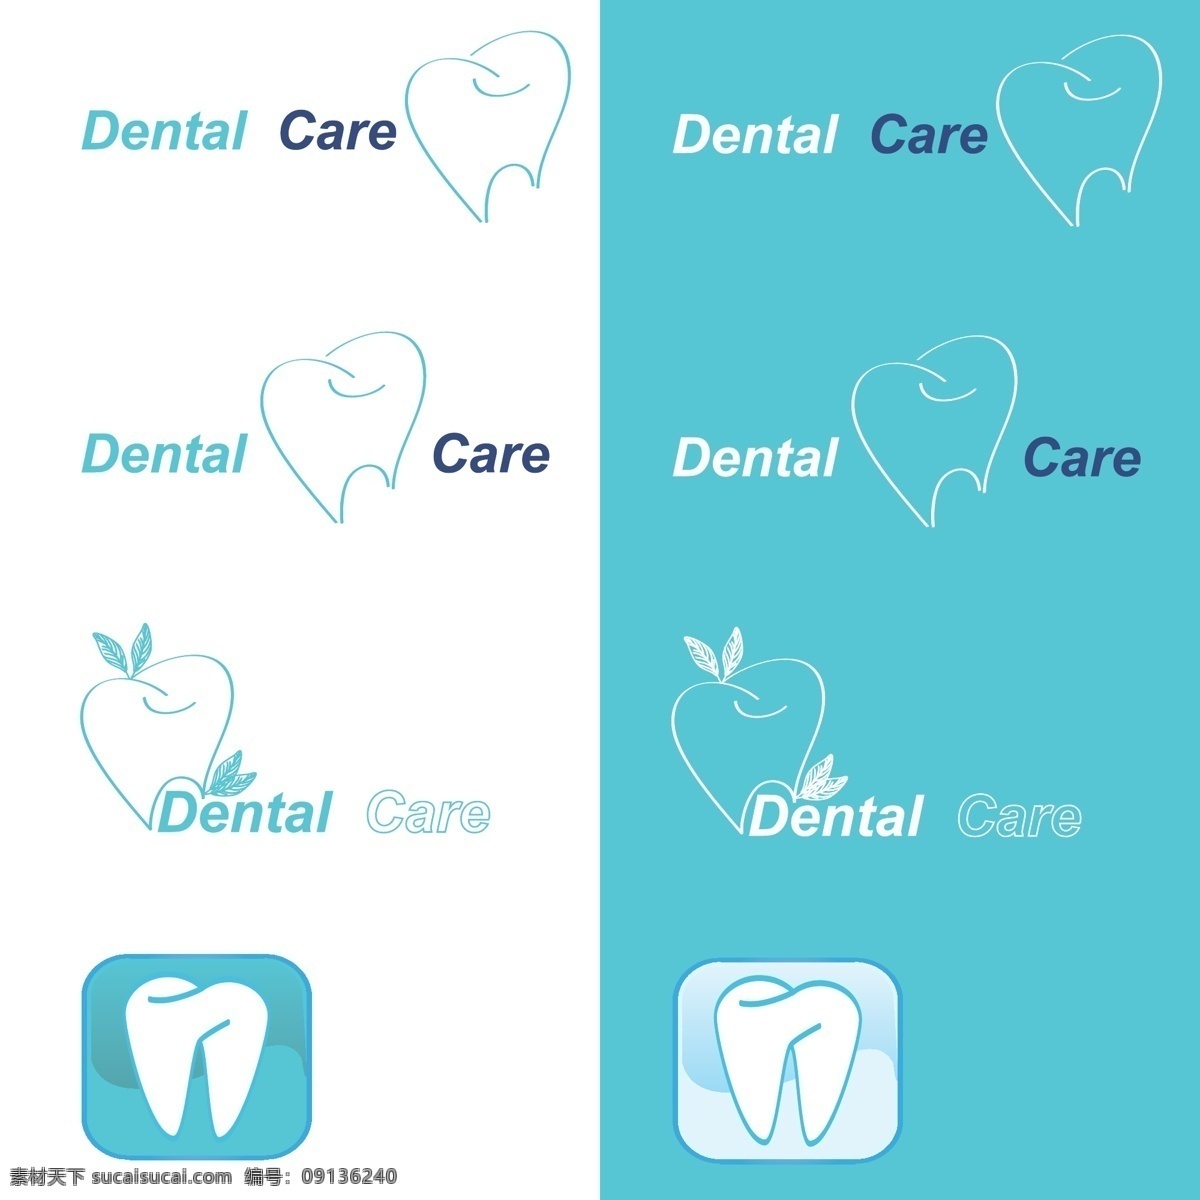 牙医 诊所 保护 牙齿 系列 矢量 矢量素材 设计素材 背景素材